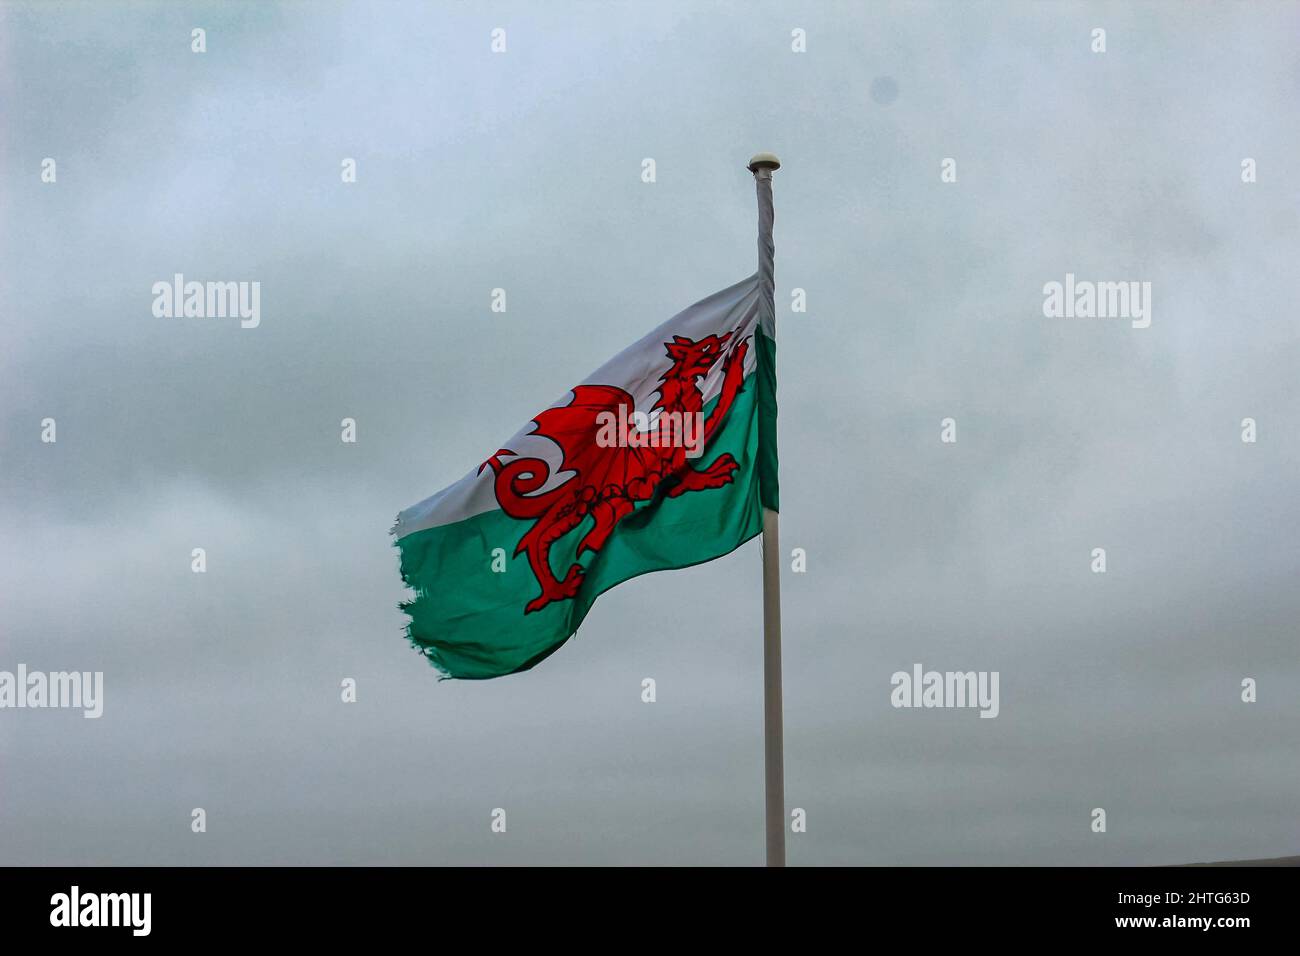 Image sombre du drapeau gallois sur un poteau lors d'une journée nuageux à New Quay, pays de Galles Banque D'Images